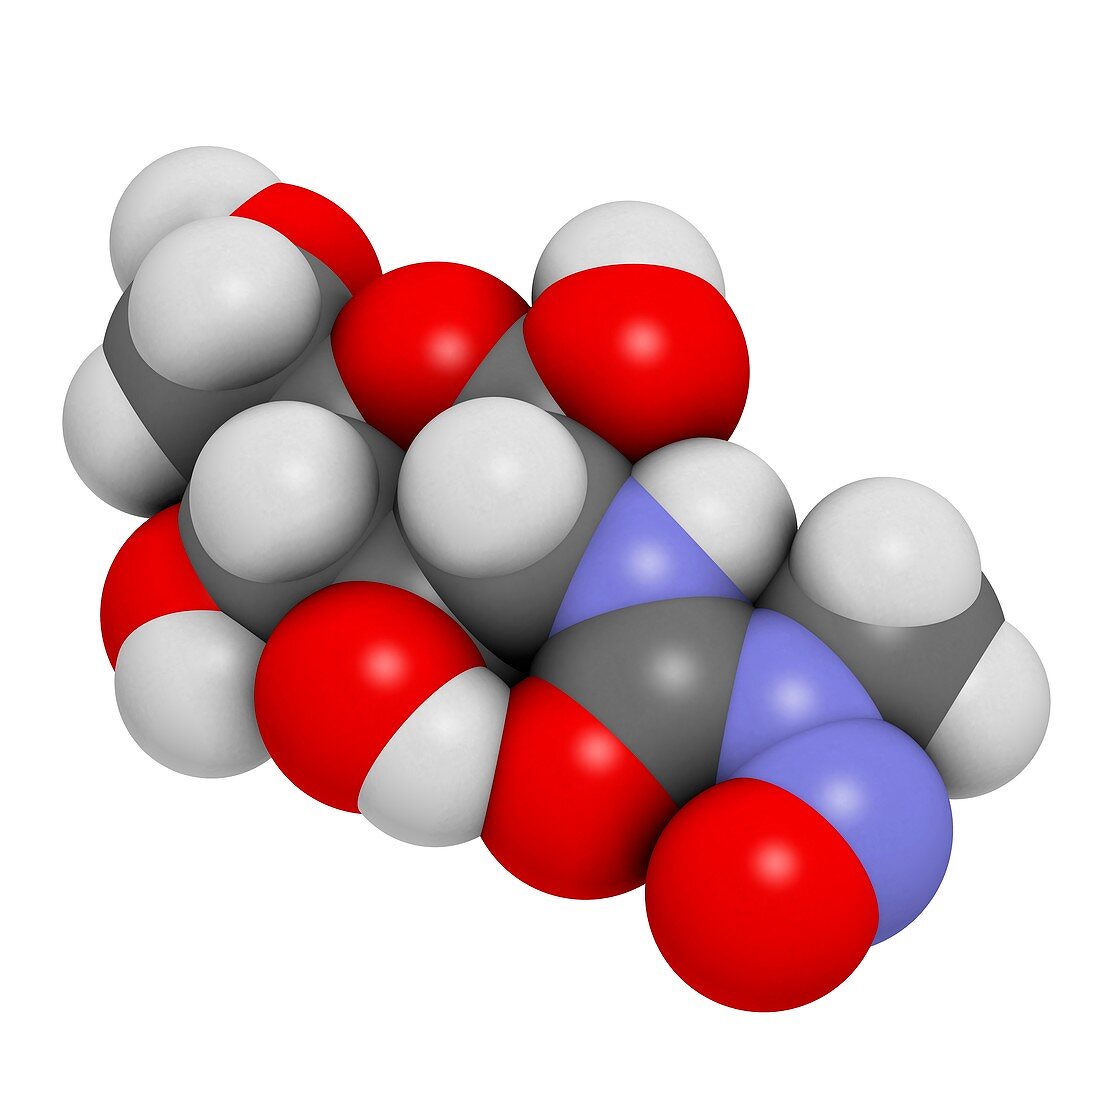 Streptozotocin cancer drug molecule